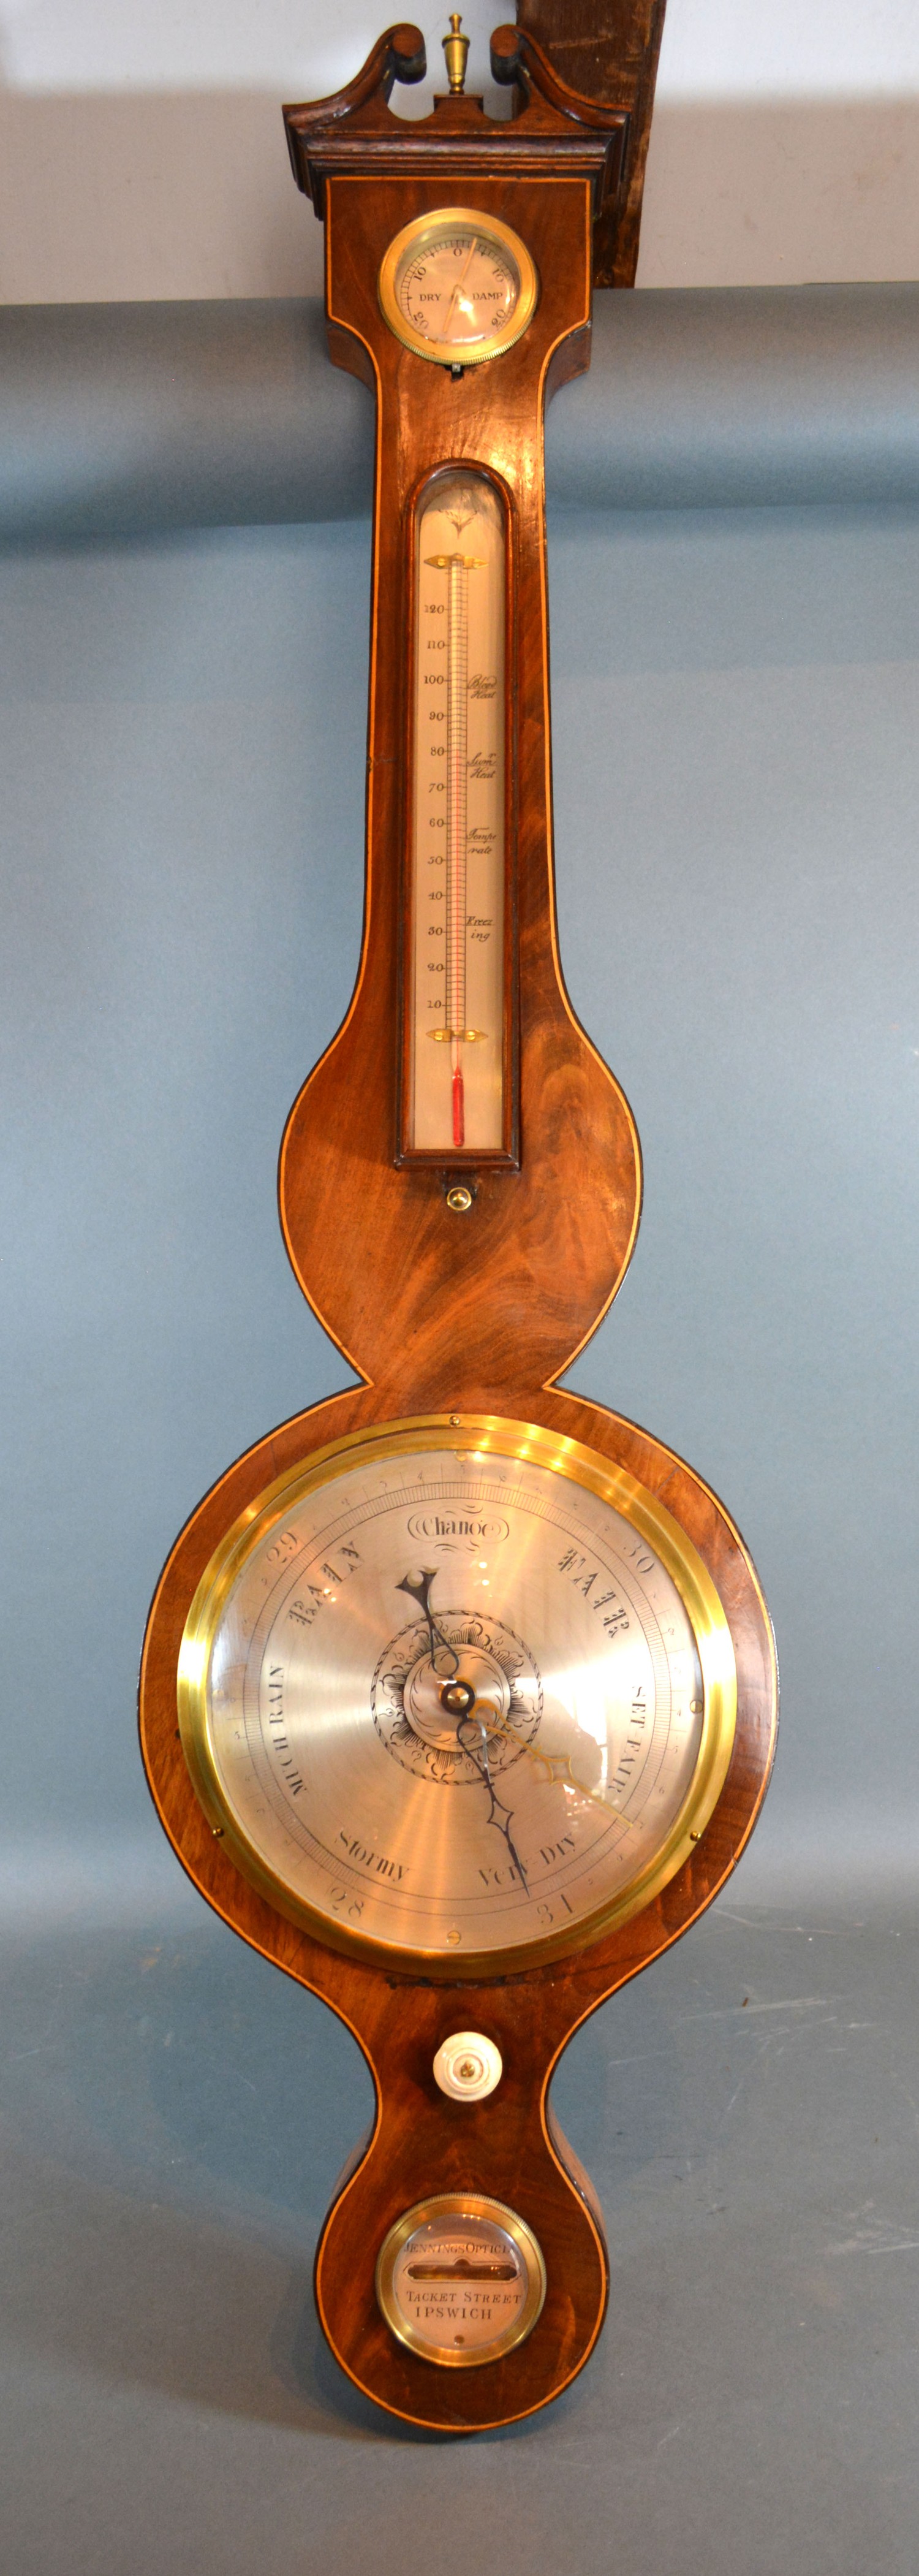 A 19th century mahogany wheel barometer